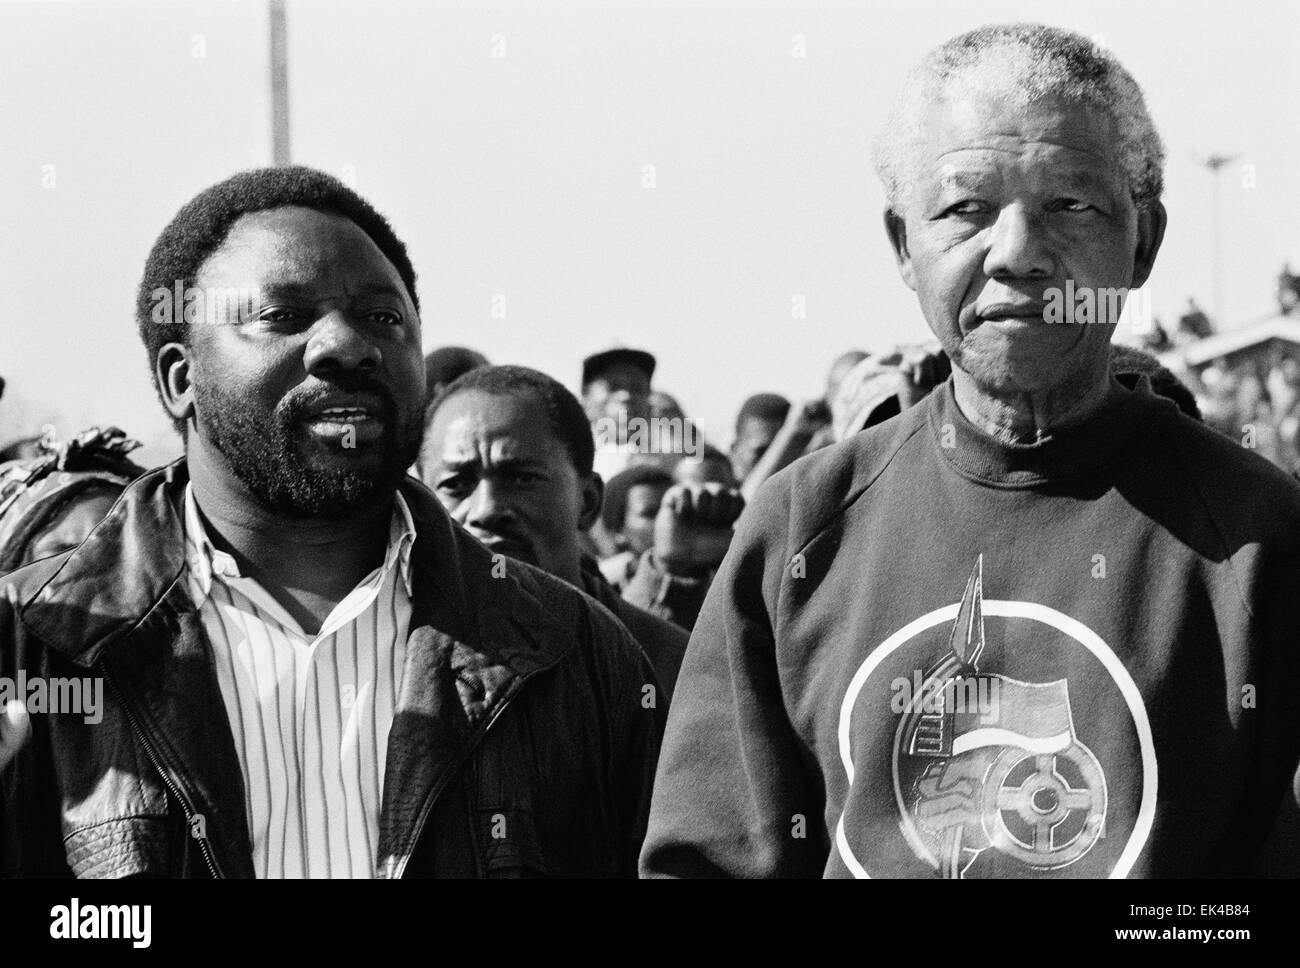 Cyril Ramaphosa und Nelson Mandela marschieren durch Soweto, das neu errichtete Denkmal für Hector Pieterson und all die anderen jungen Helden und Heldinnen, die ihr Leben im Kampf für Freiheit, Demokratie und Frieden niedergelegt. unseres Kampfes, 16 Juni 1992.Hector sagte Petersen war die erste Person, die am 16. Juni gewesen sein 1976and mehr als 600 Menschen in gewaltsamen Auseinandersetzungen mit der Polizei seit diesem Tag getötet. Trotzt seiner Organisation Anruf aus der Massenaktion Kampagne fordert, führte Herr Mandela auch einen Marsch von etwa 2000 Anhängern durch Soweto, die Gedenkstätte an der Regina Mundi Chur Stockfoto